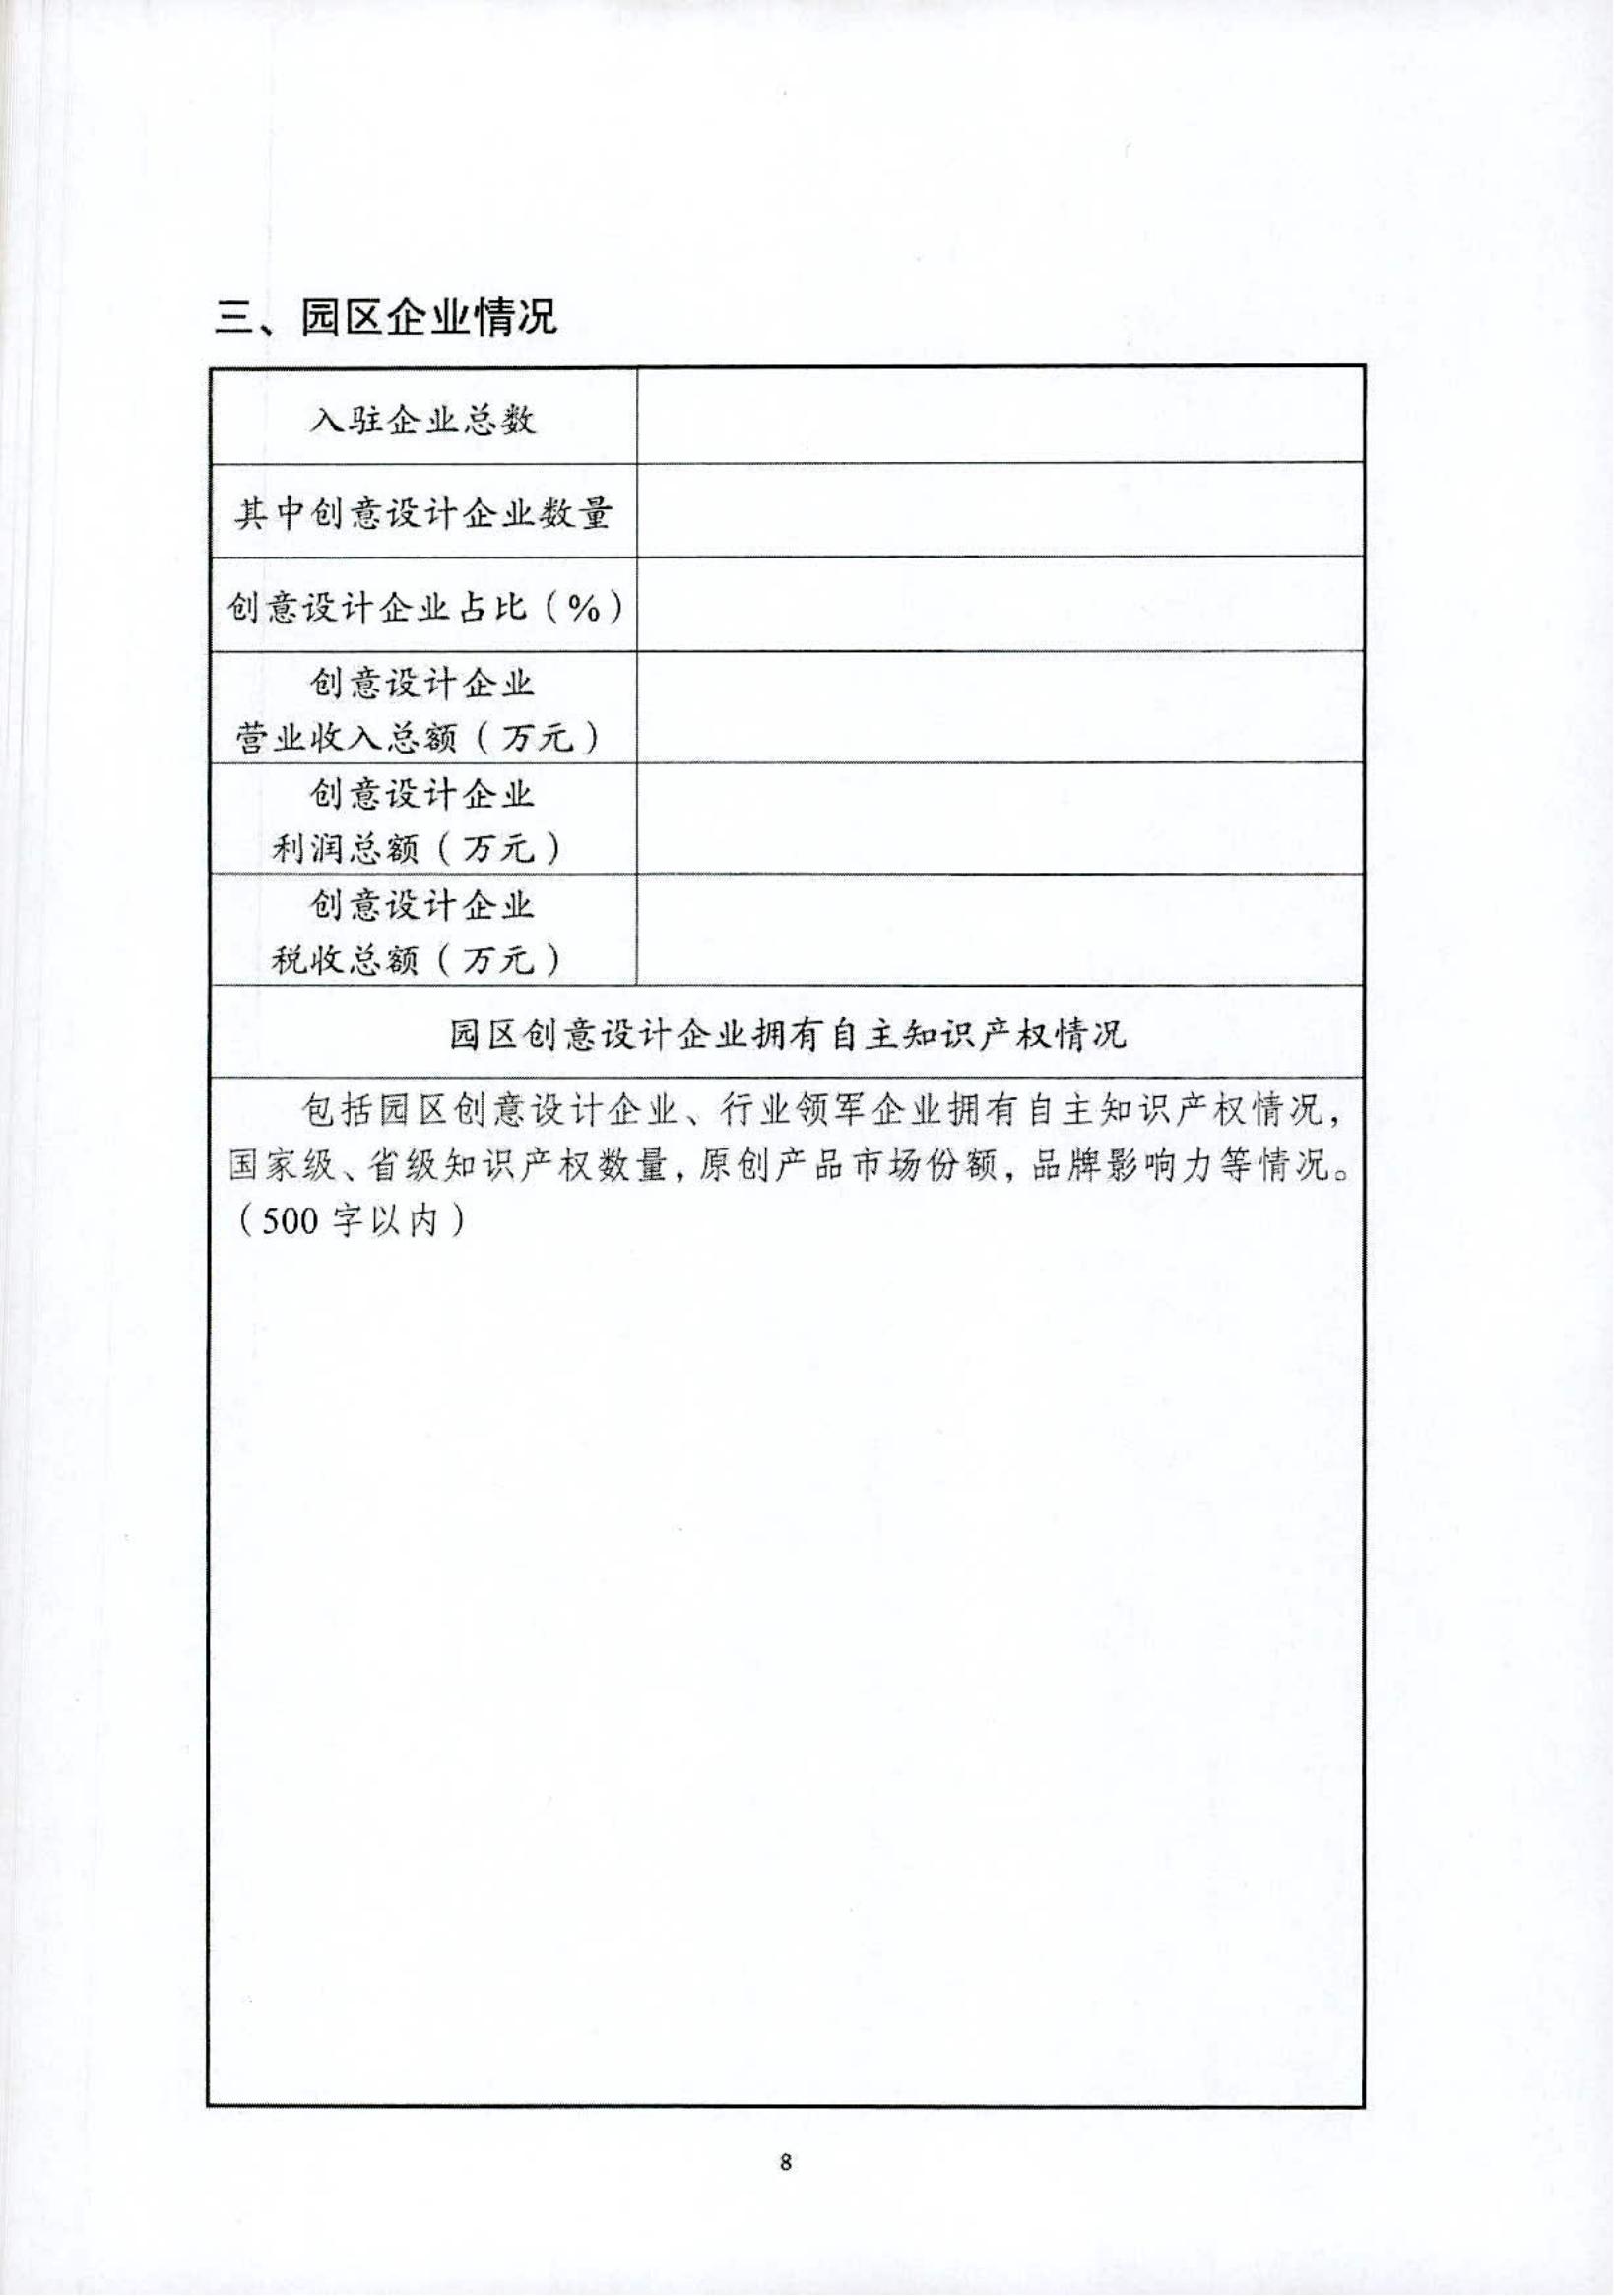 关于开展黑龙江省省级创意设计产业园区2022年度申报工作的通知_11.jpg